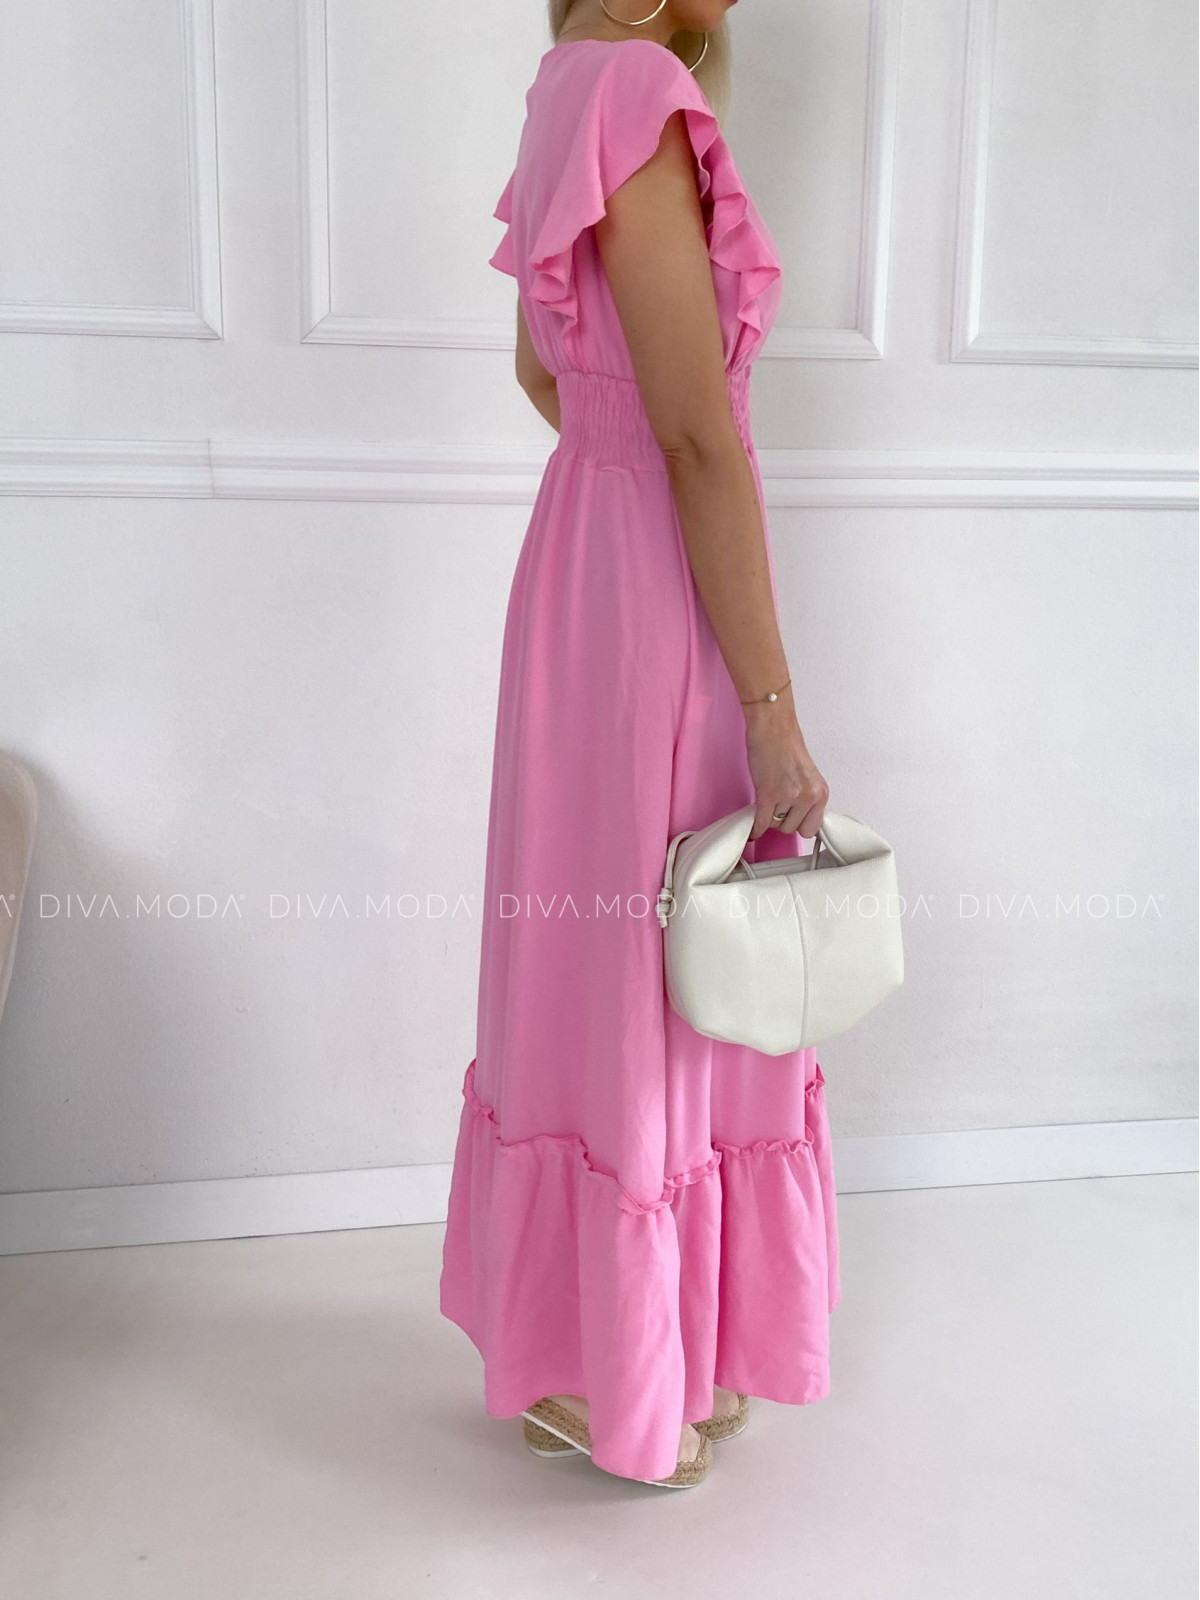 Maxi šaty s volánky na ramenou ella baby pink B 59